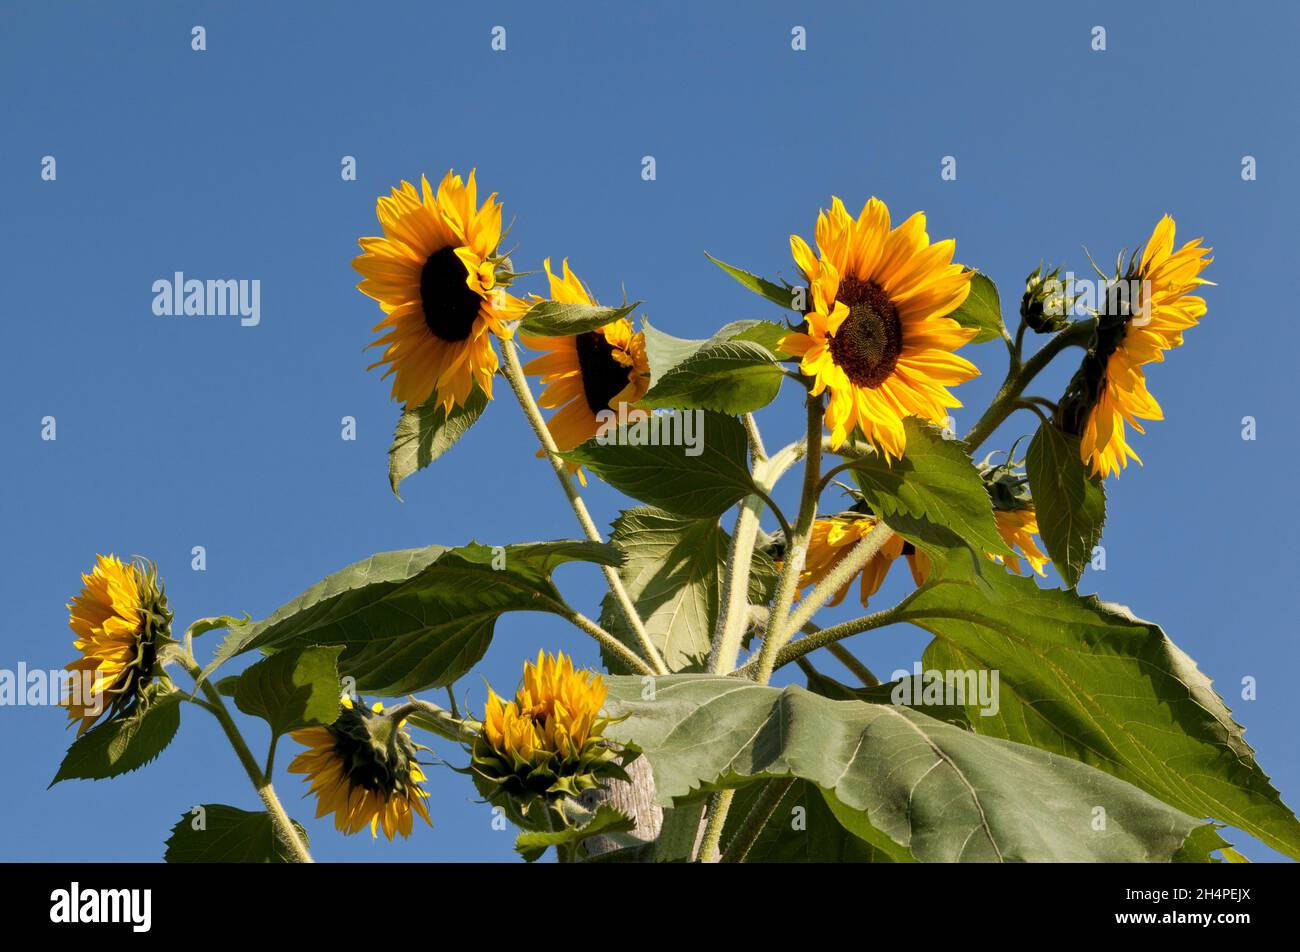 Sun flowers against a blue sky Stock Photo